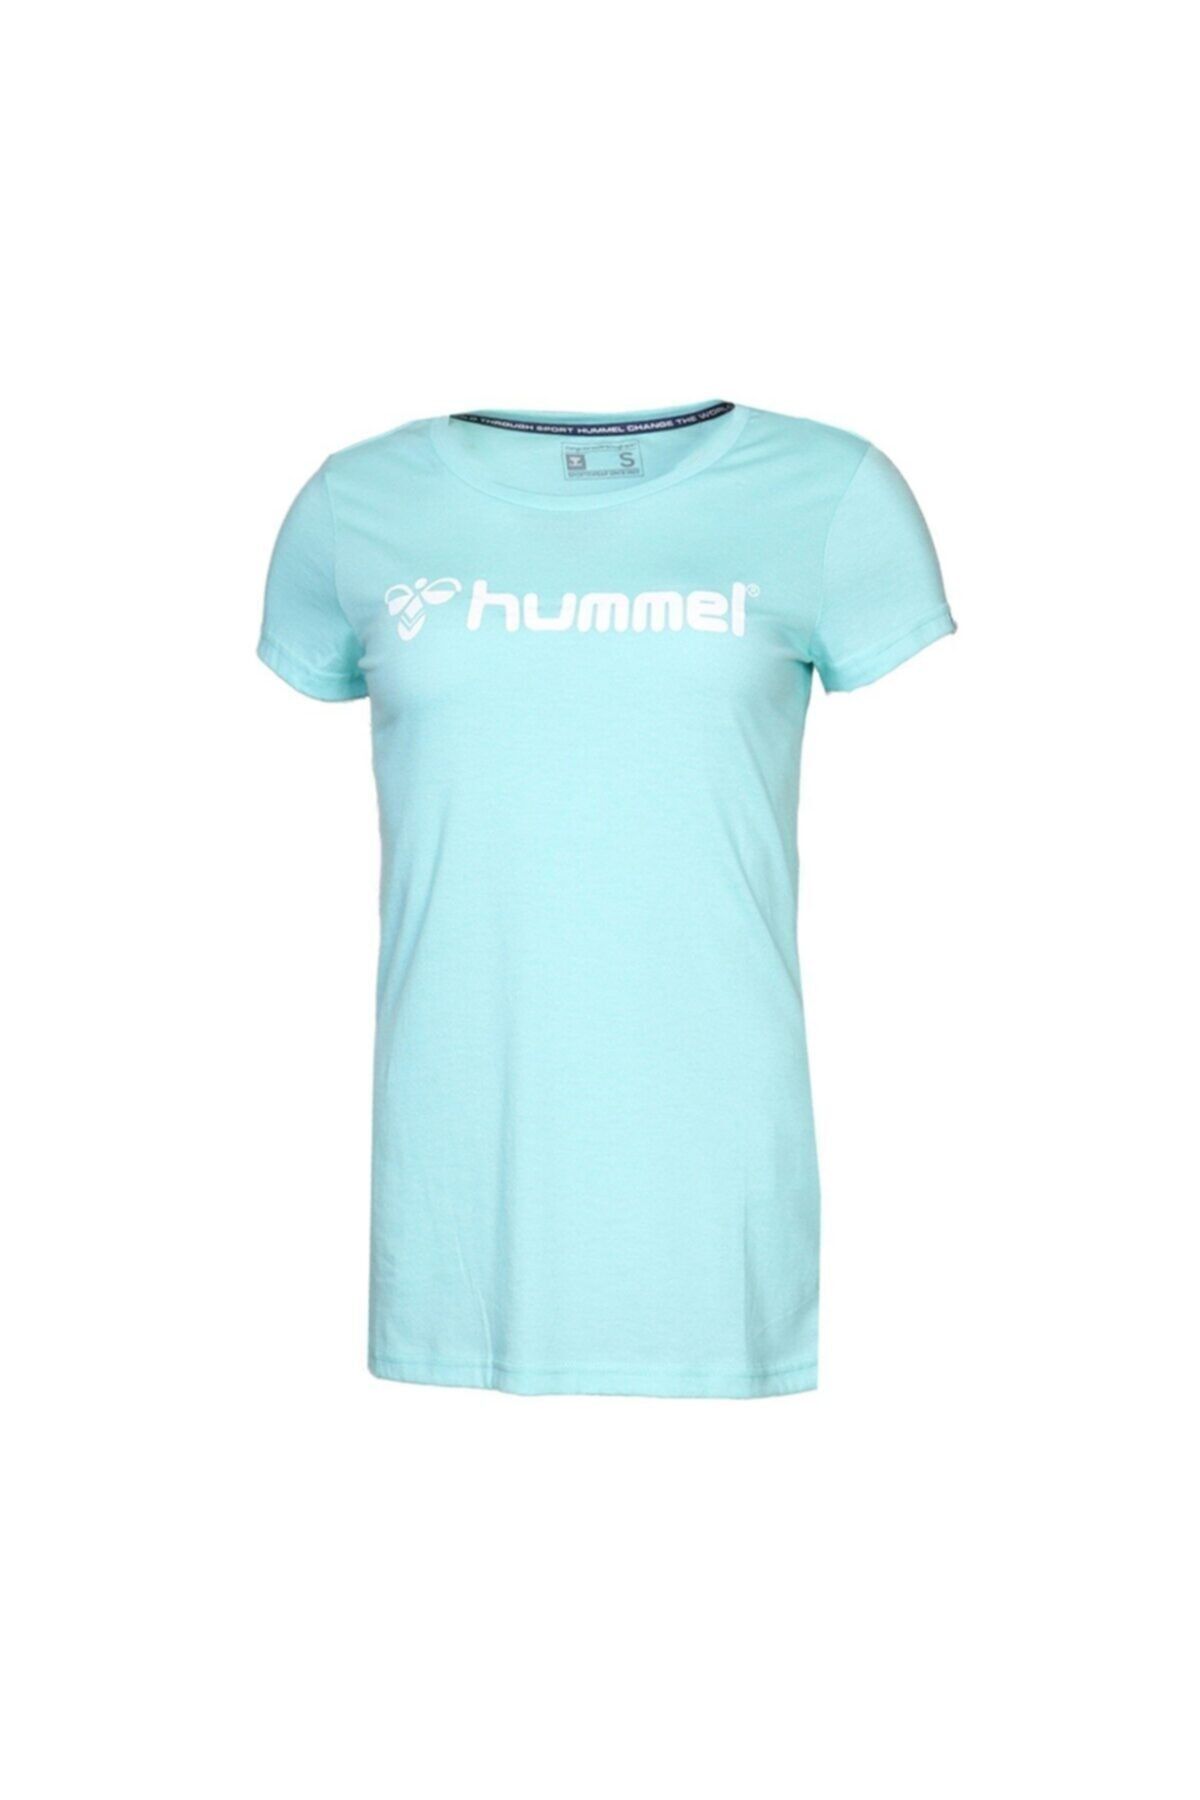 hummel HMLMARIHU T-SHIRT S/S ARUBA MAVI Kadın T-Shirt 100580771